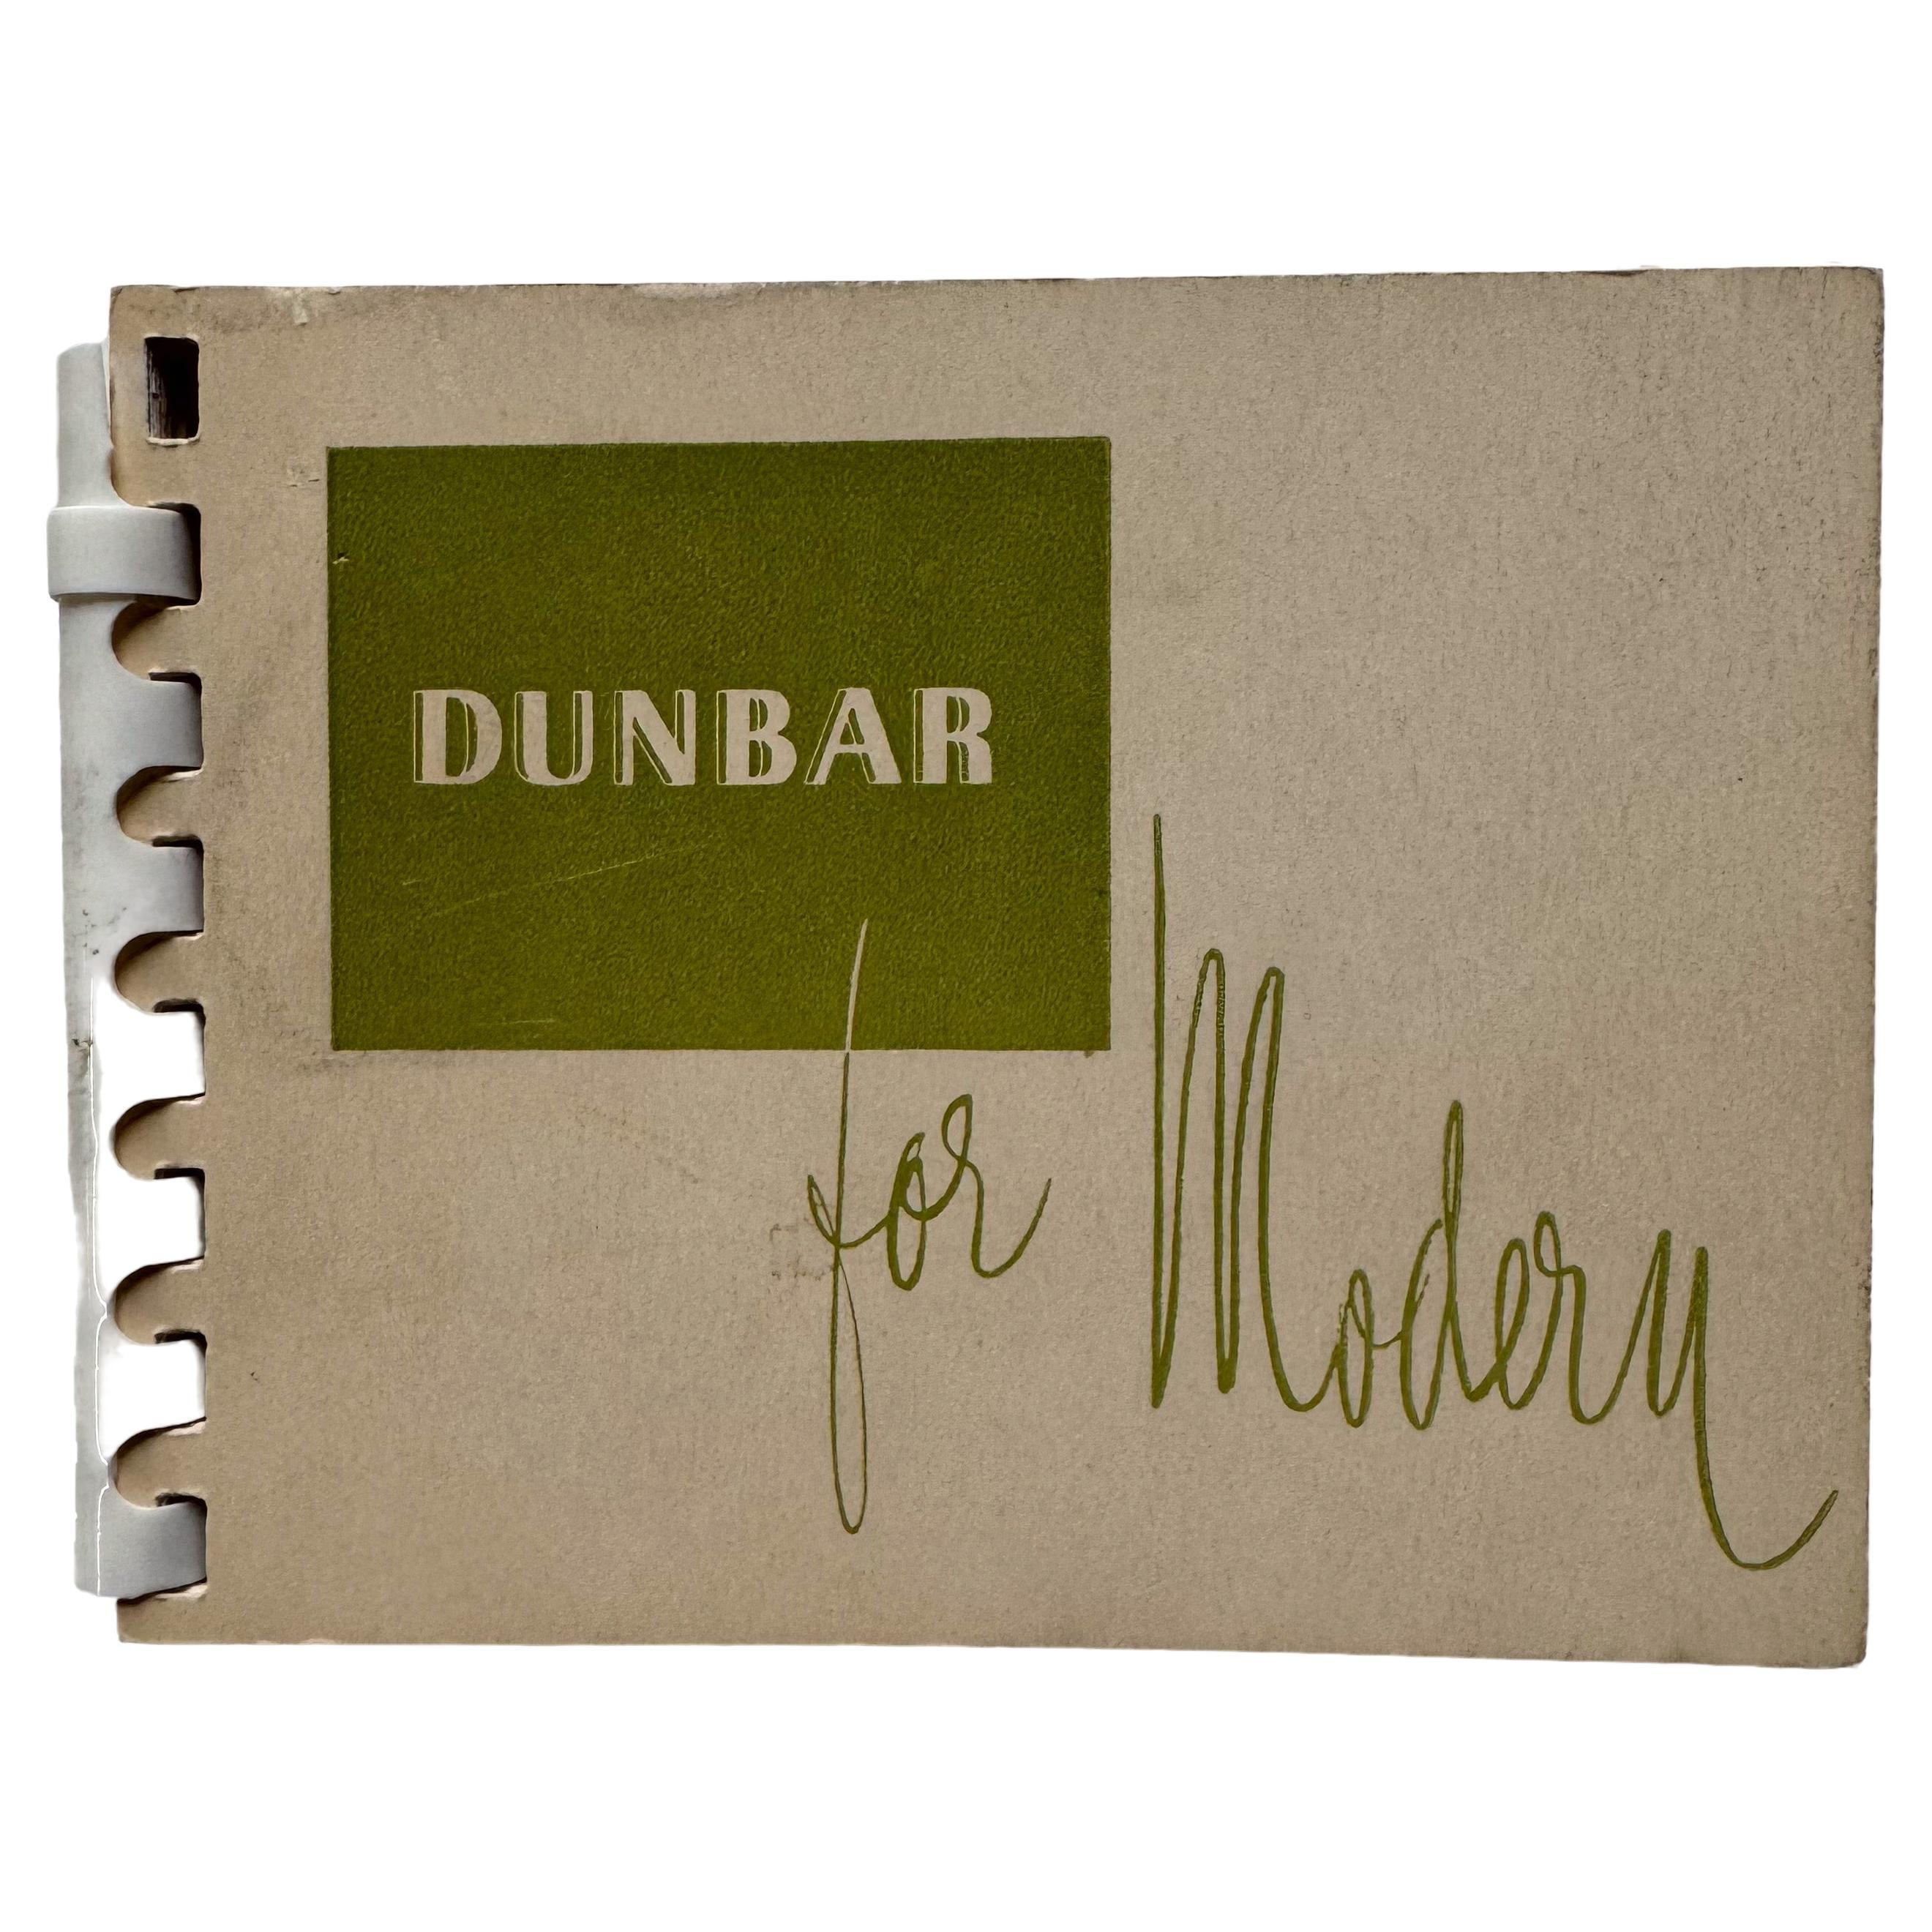 Dunbar For Modern: Market Notes, 8. Januar bis 19. Januar 1951 im Angebot